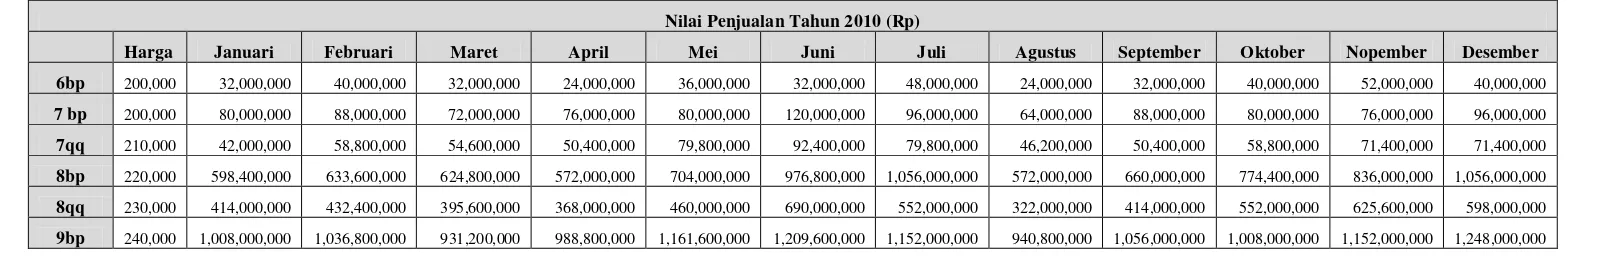 Tabel 5.4. Nilai Penjualan Tahun 2009 